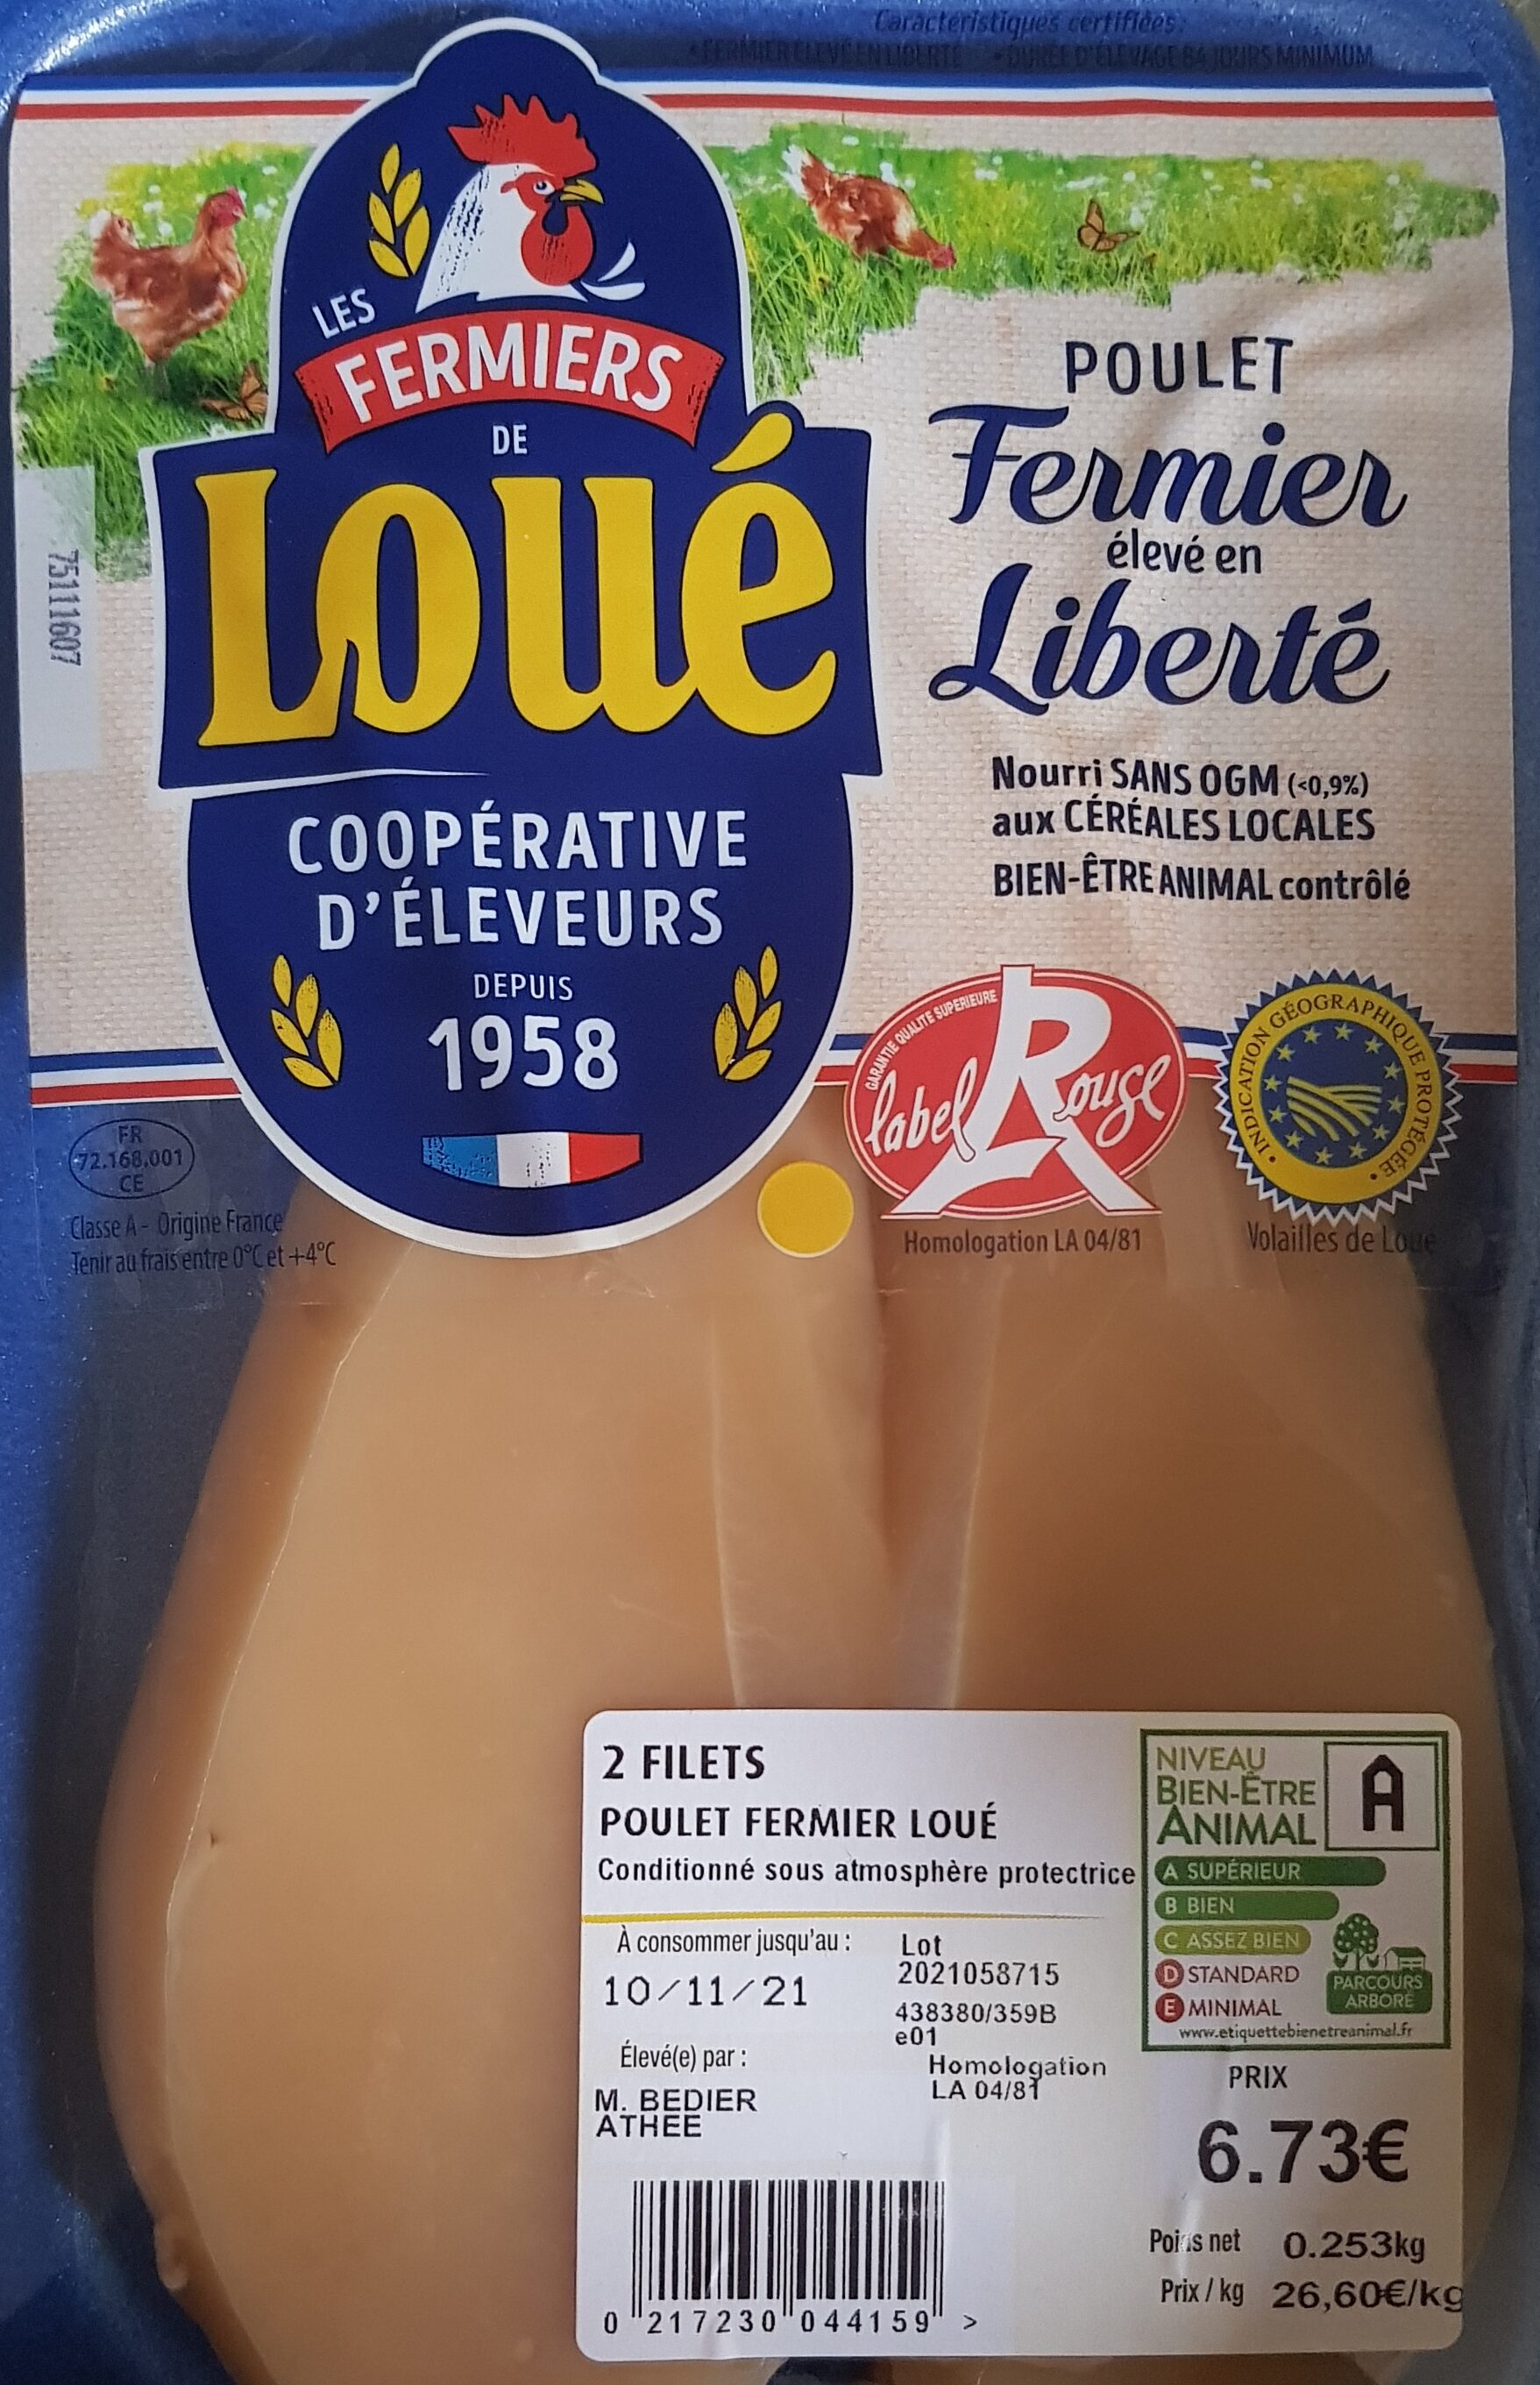 2 filets de poulet fermier Loué - Product - fr